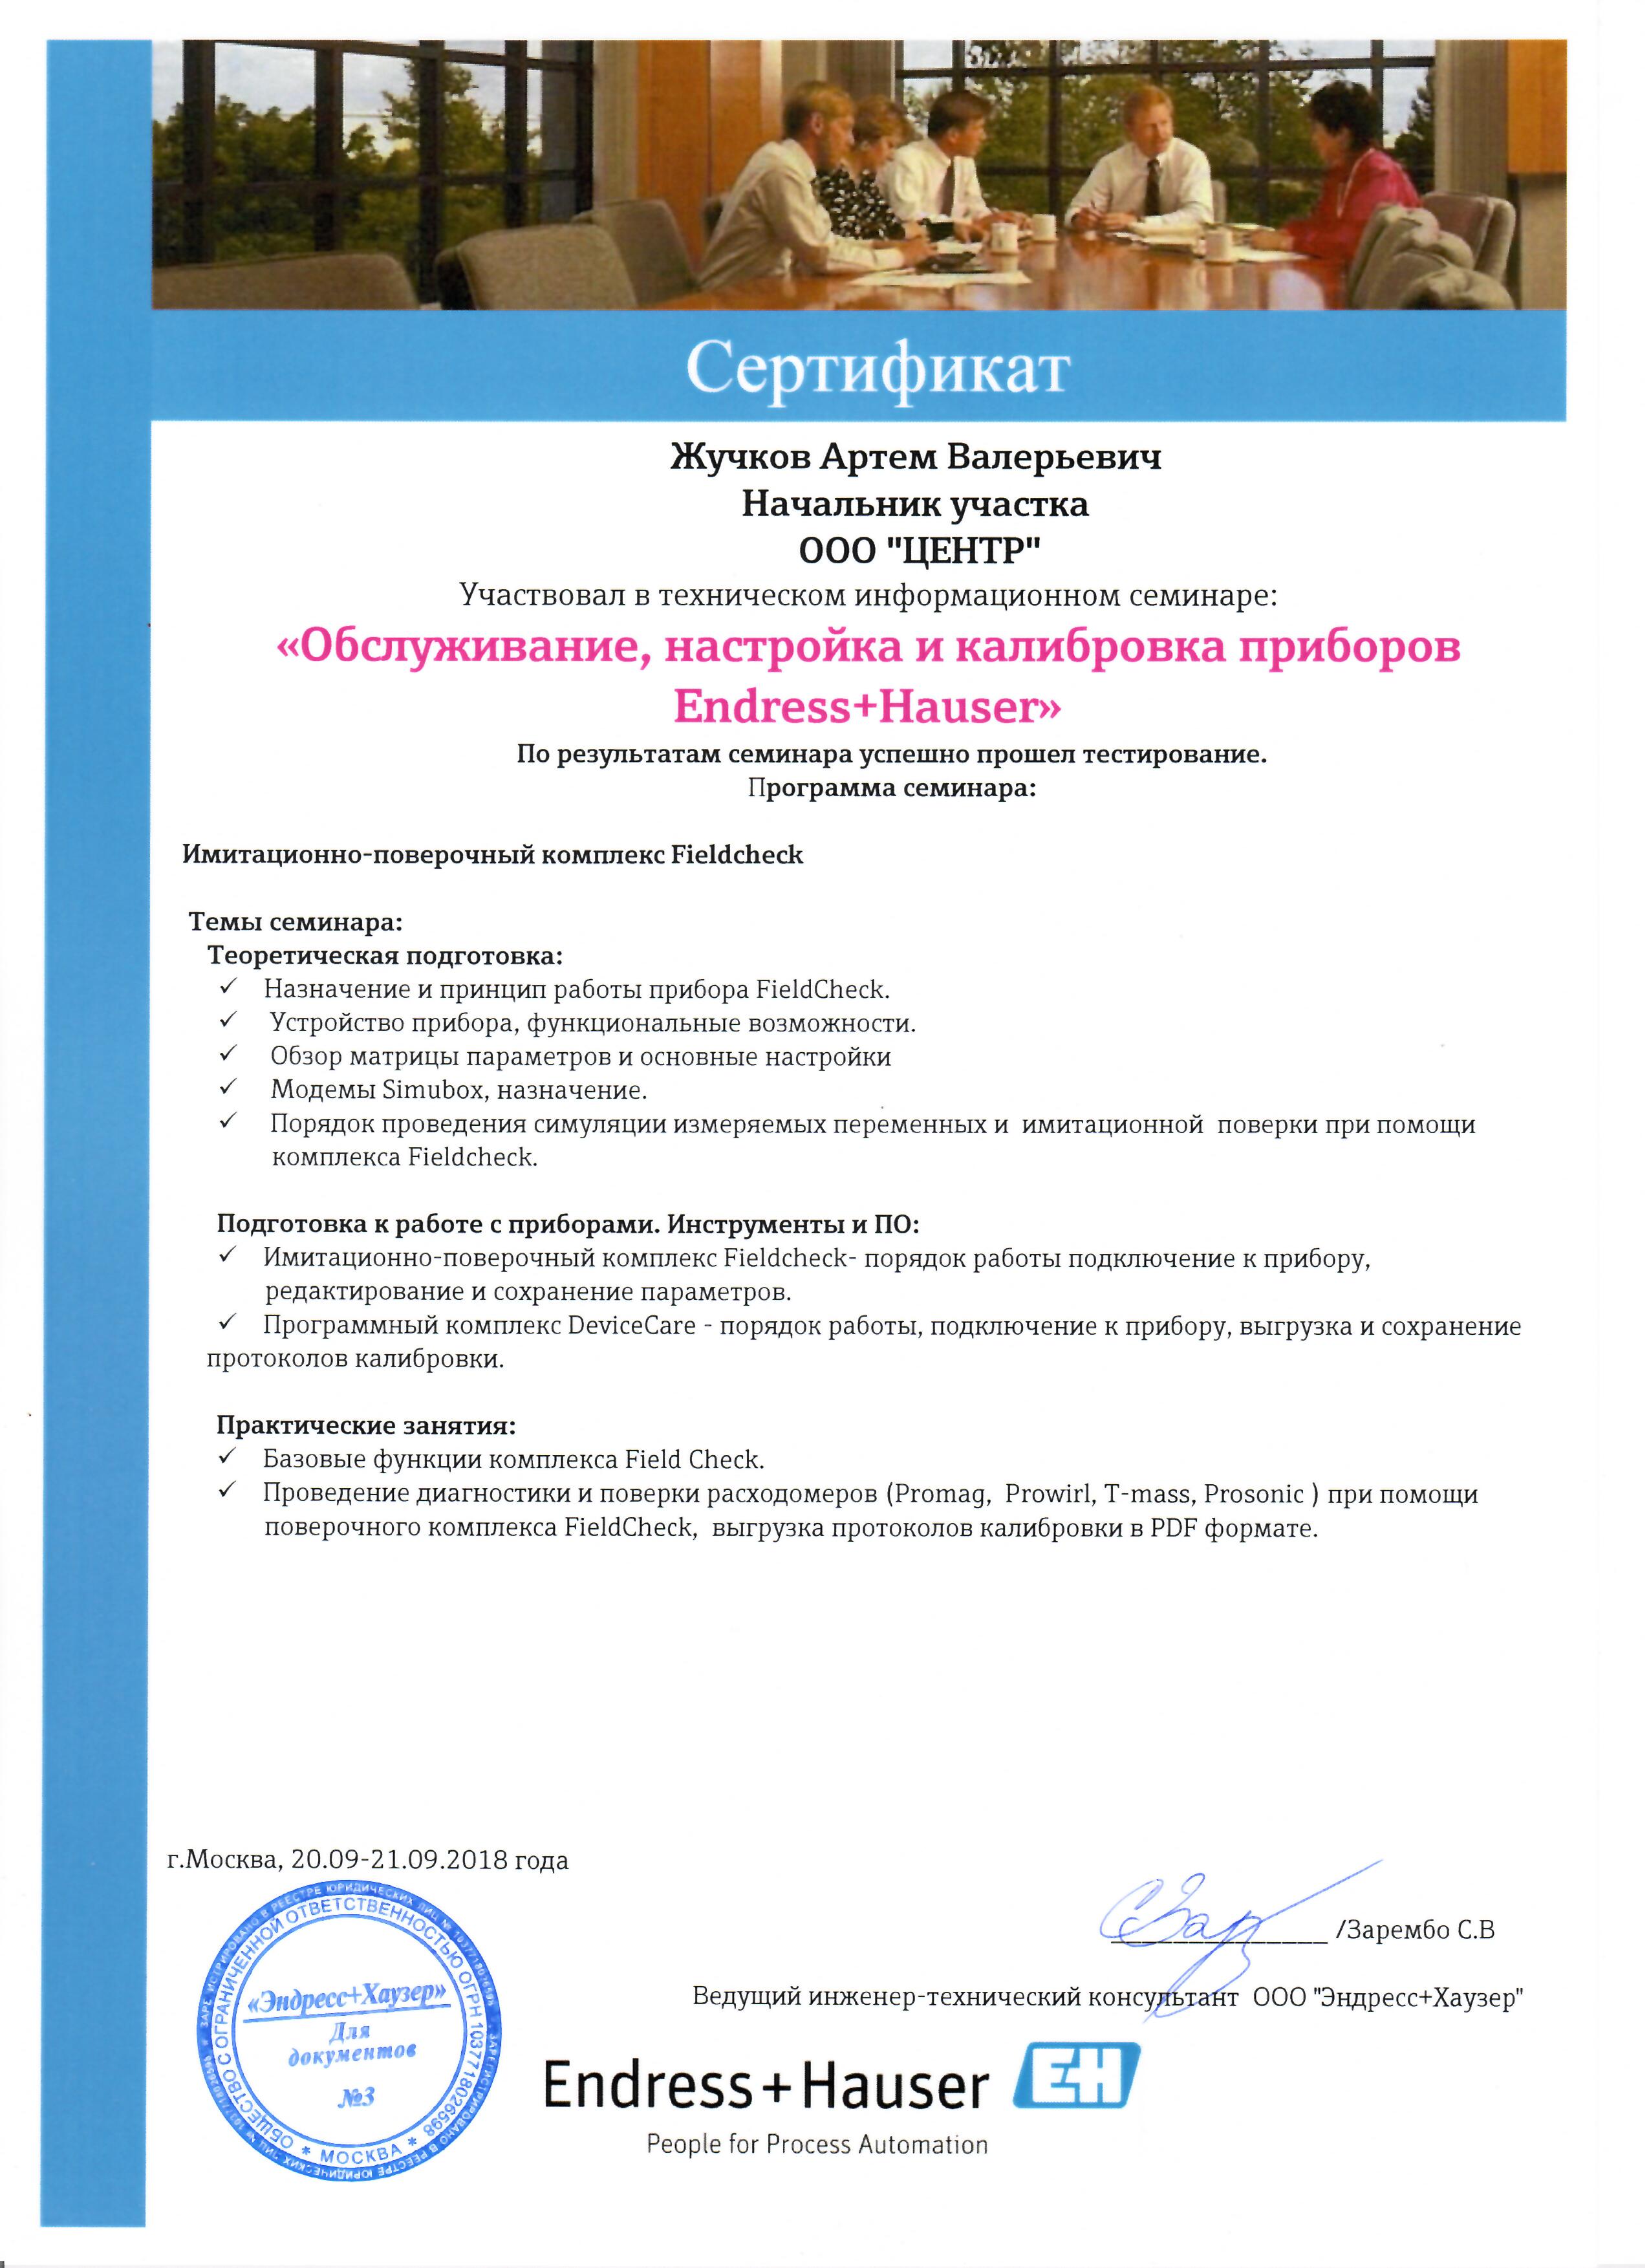 Сертификат Endress+Hauser Обслуживание и калибровка приборов (Жучков А.В)